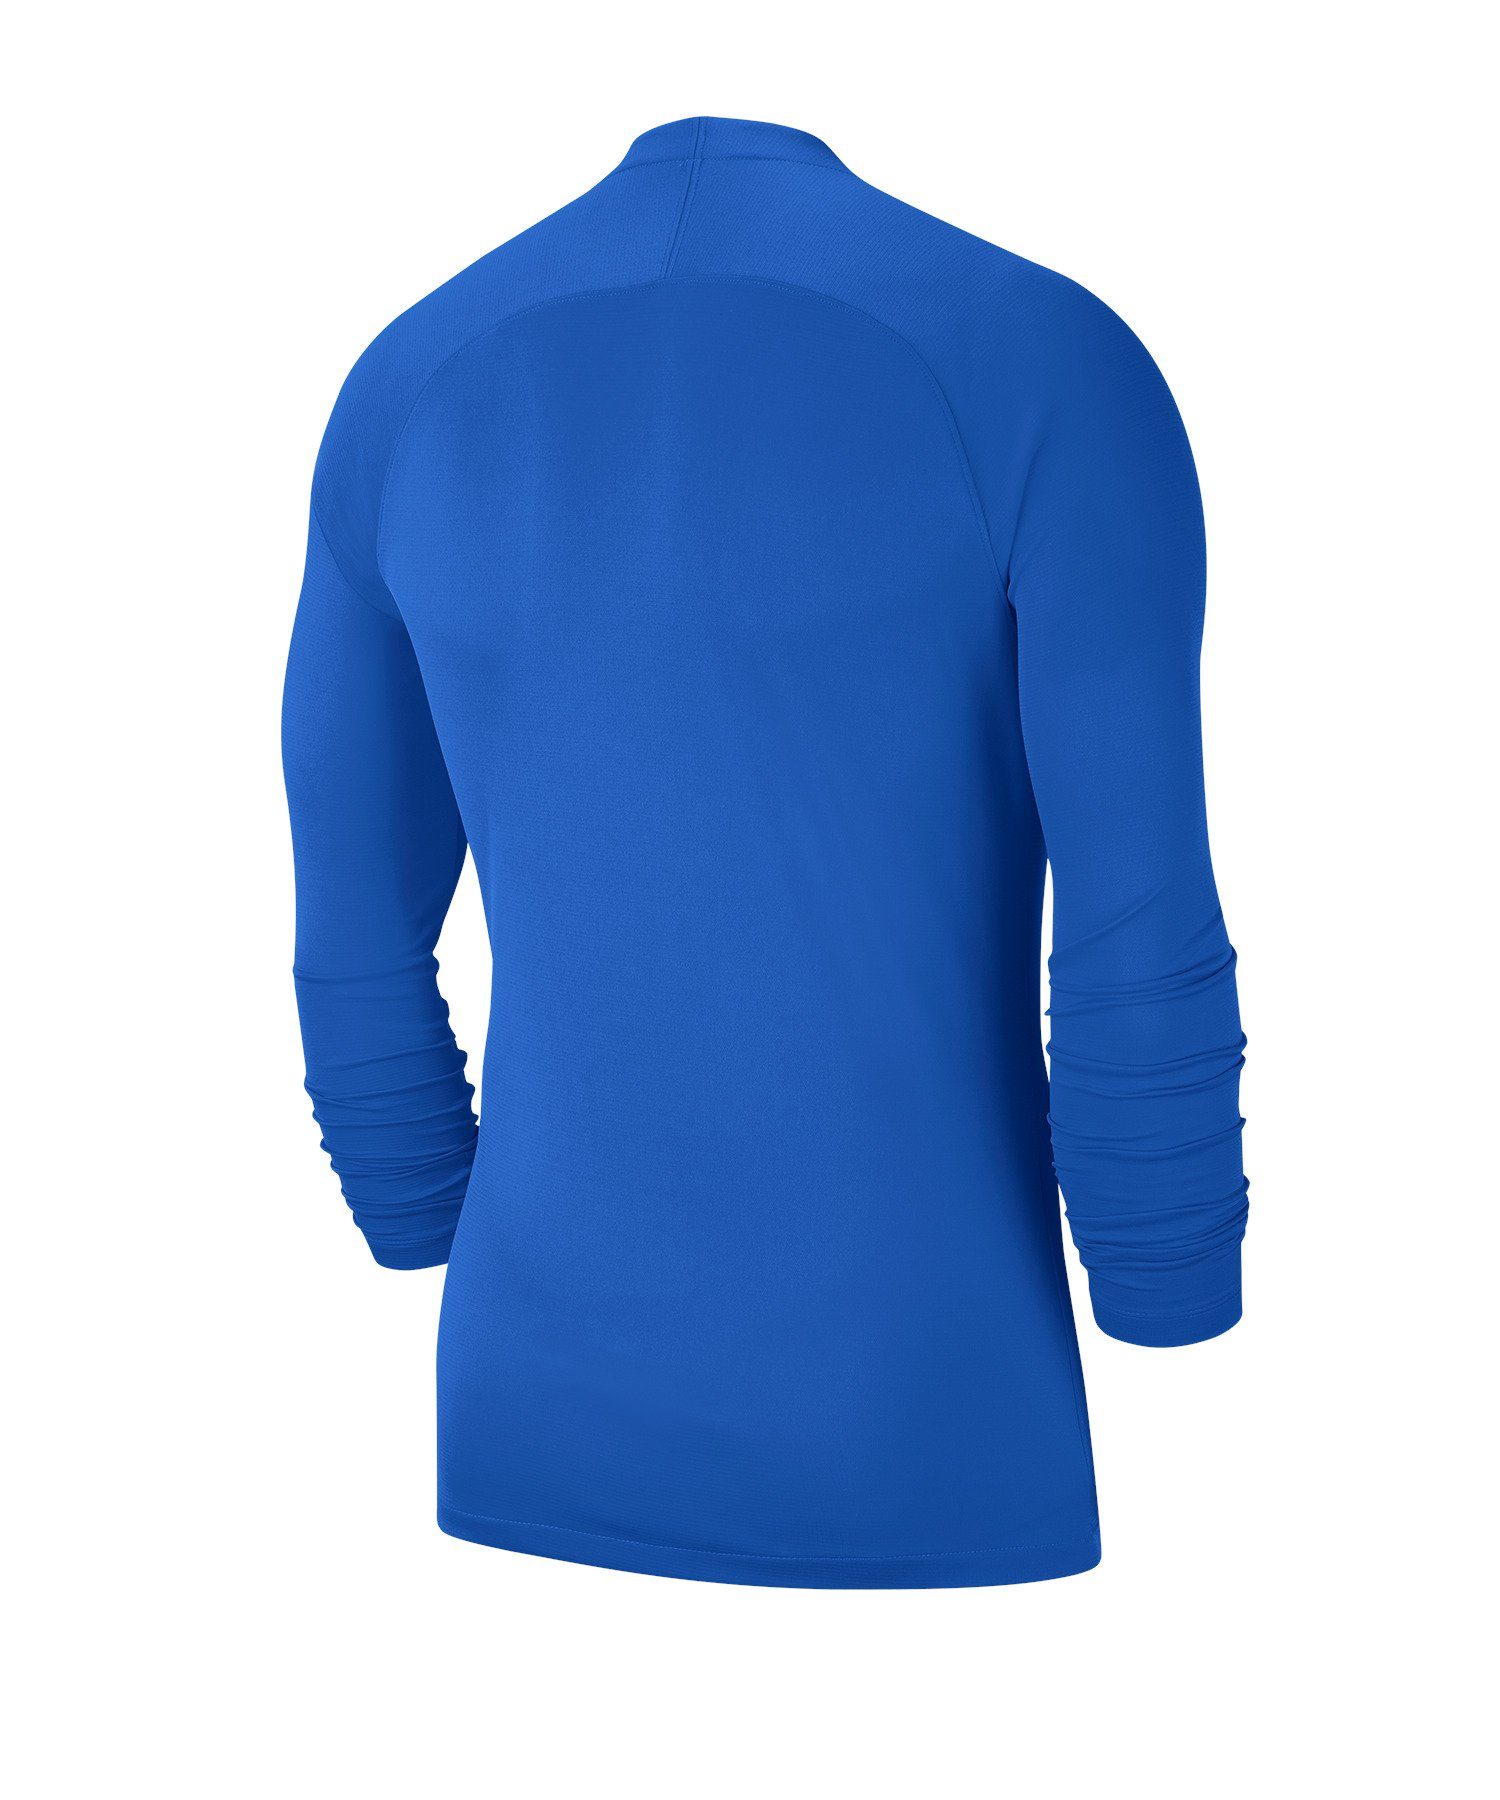 Layer Daumenöffnung Funktionsshirt Top Kids Nike blauweissblau Park First